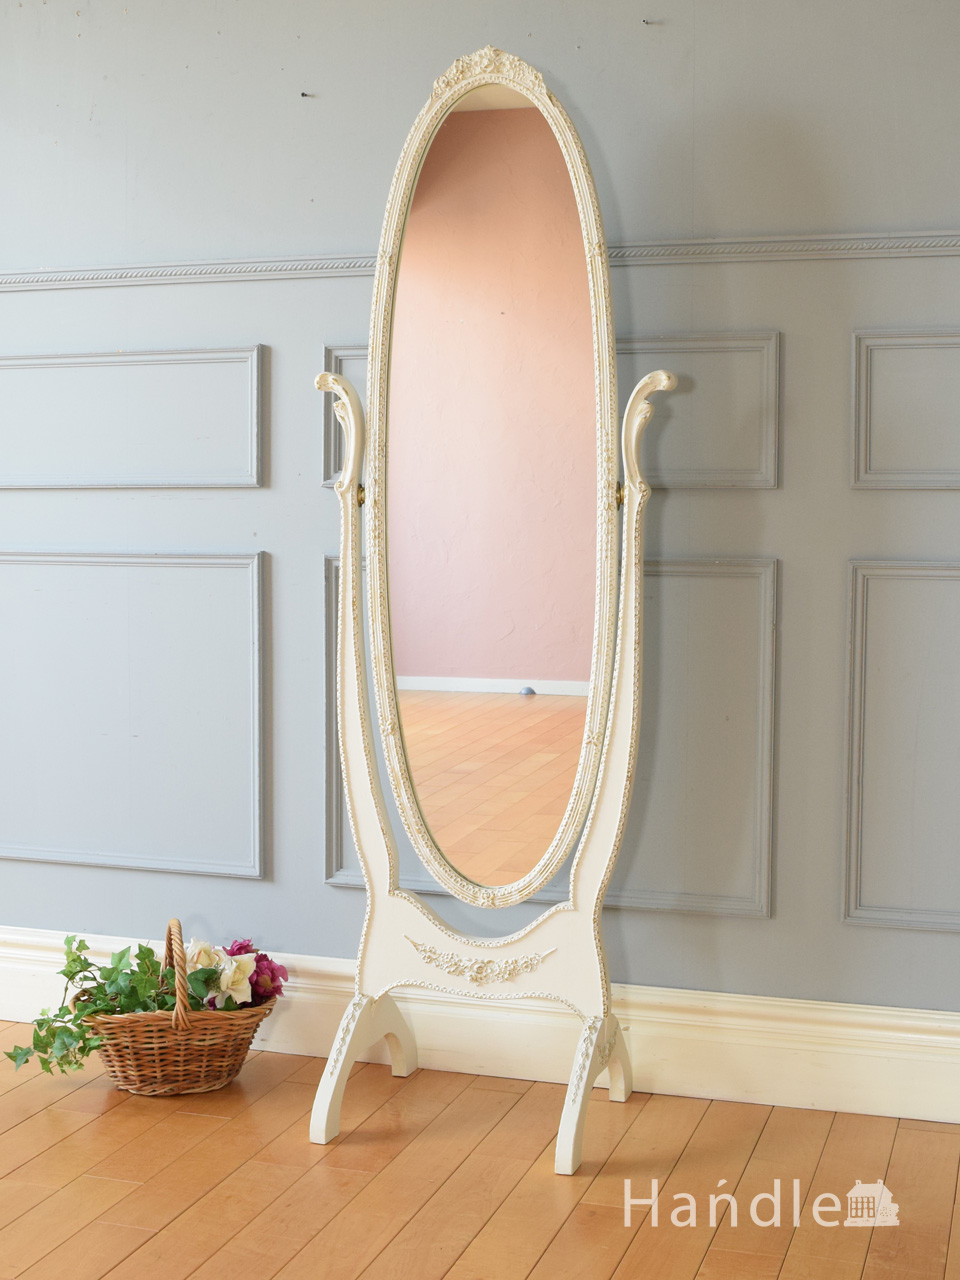 フランスで見つけたアンティークの鏡、優雅な雰囲気の白い